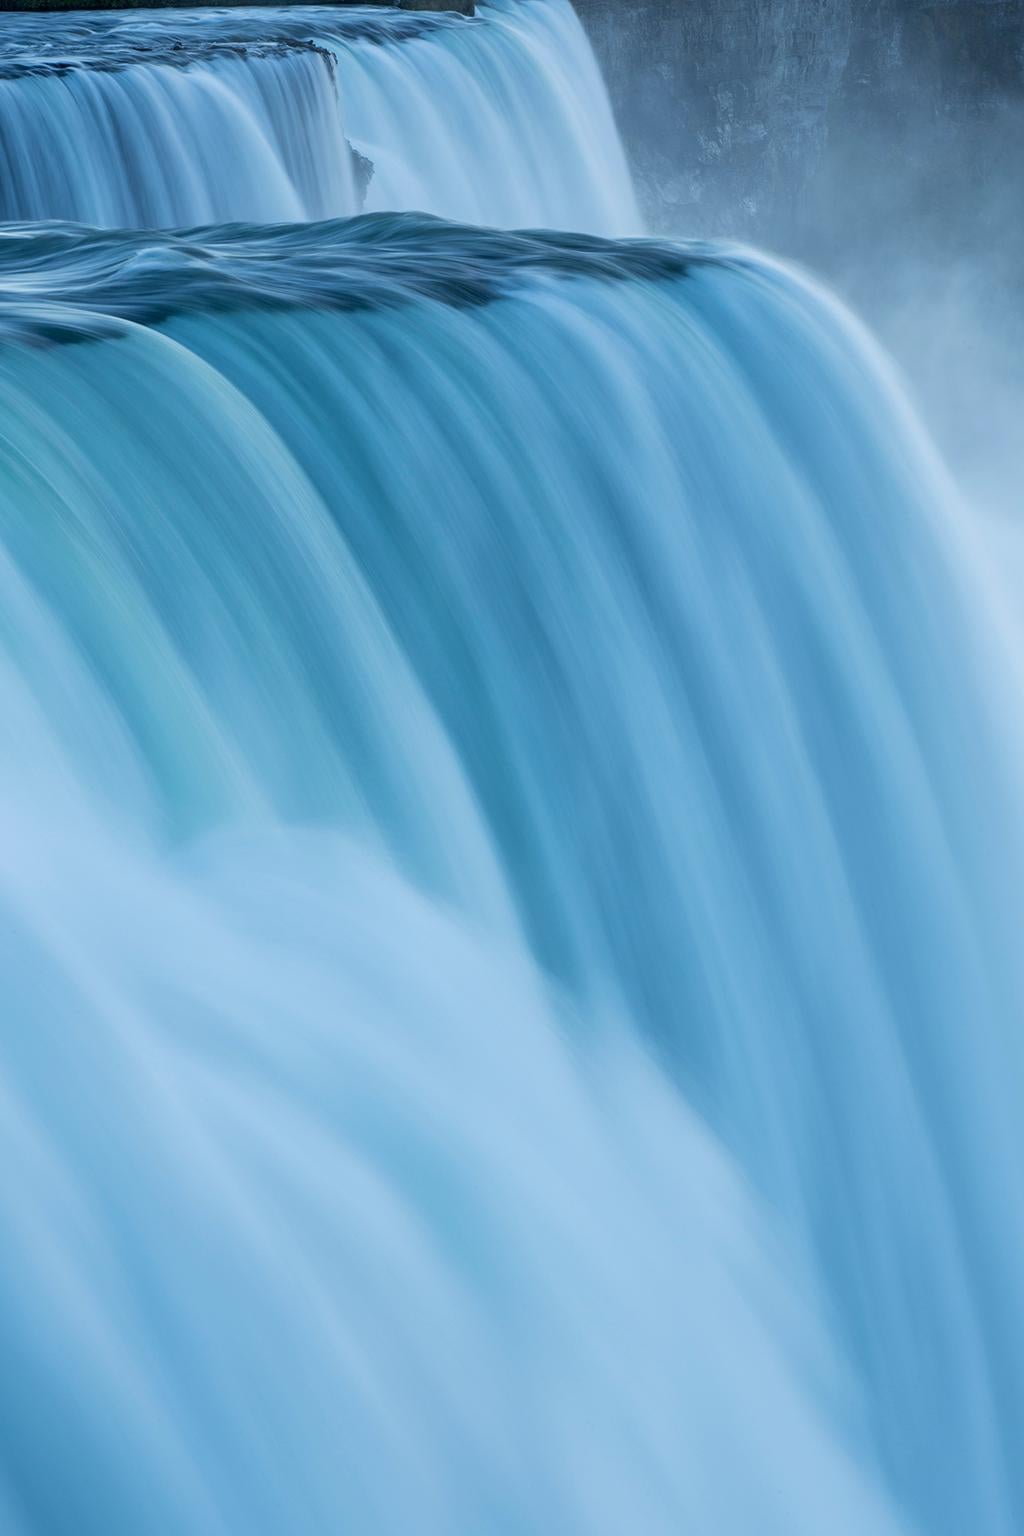 Cosmo Condina Color Photograph - The American Falls, Niagara Falls, New York, USA.